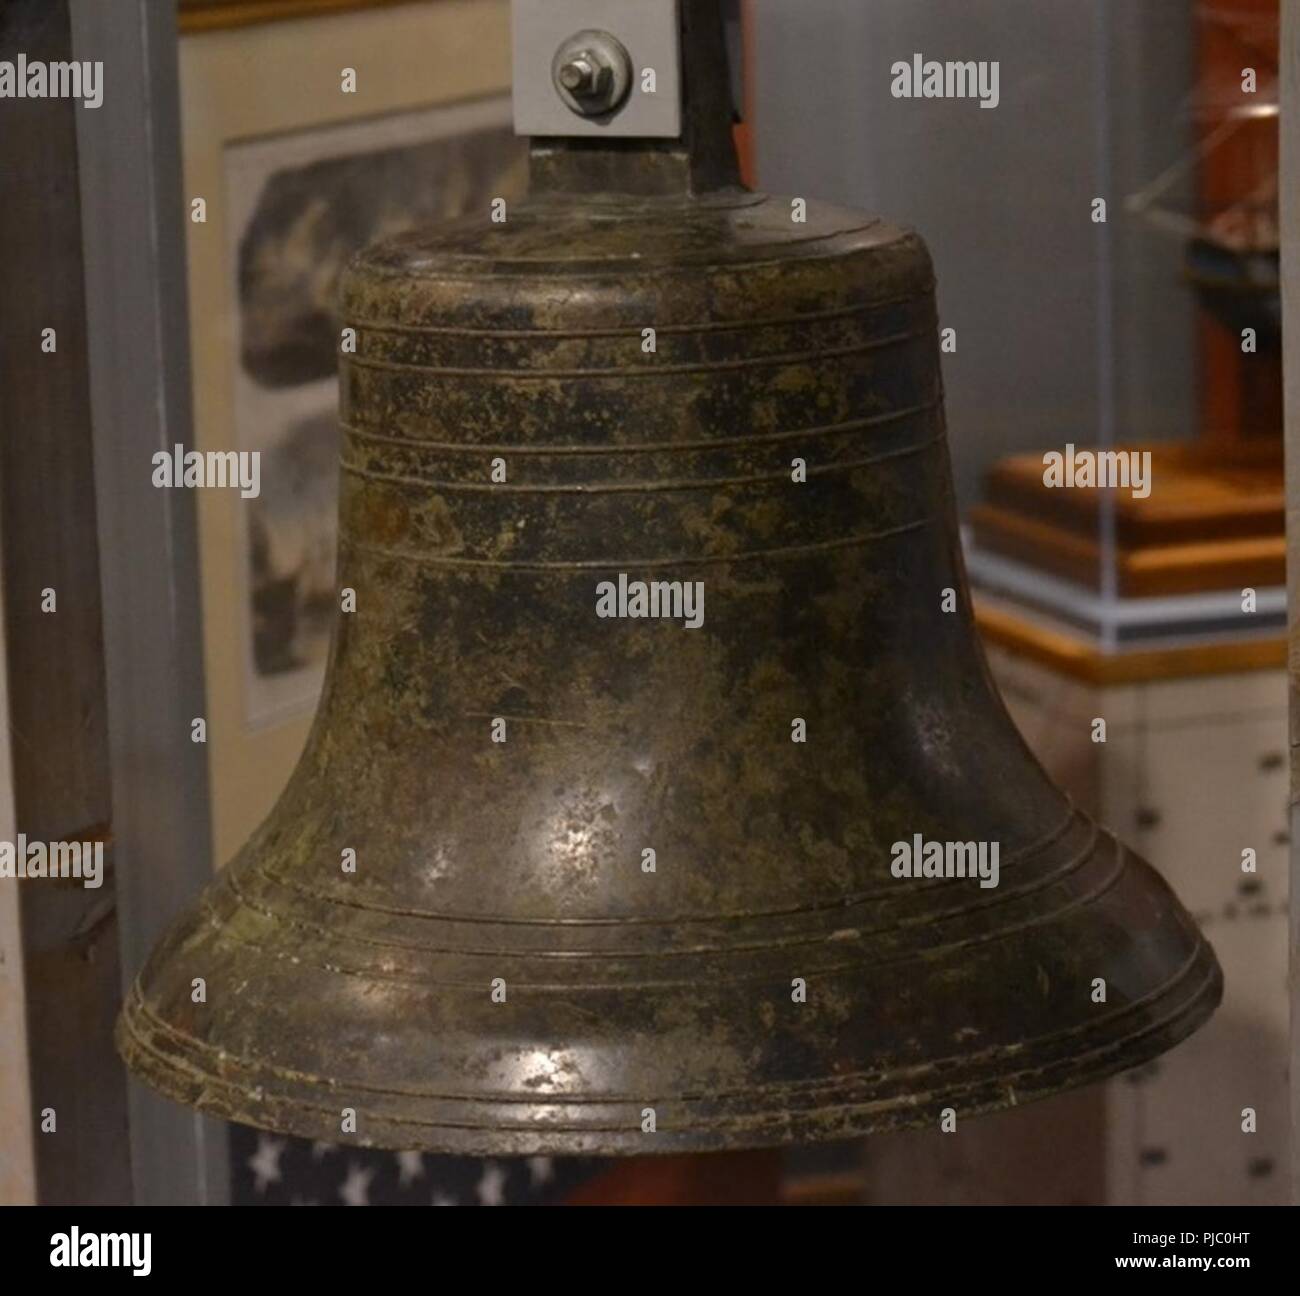 La campana del buque desde el USS Cumberland en exhibición en el Museo Naval de Hampton Roads. El Cumberland se hundió durante un enfrentamiento con el Ironclad CSS Virginia en marzo de 1862, durante la batalla de Hampton Roads. Foto de stock